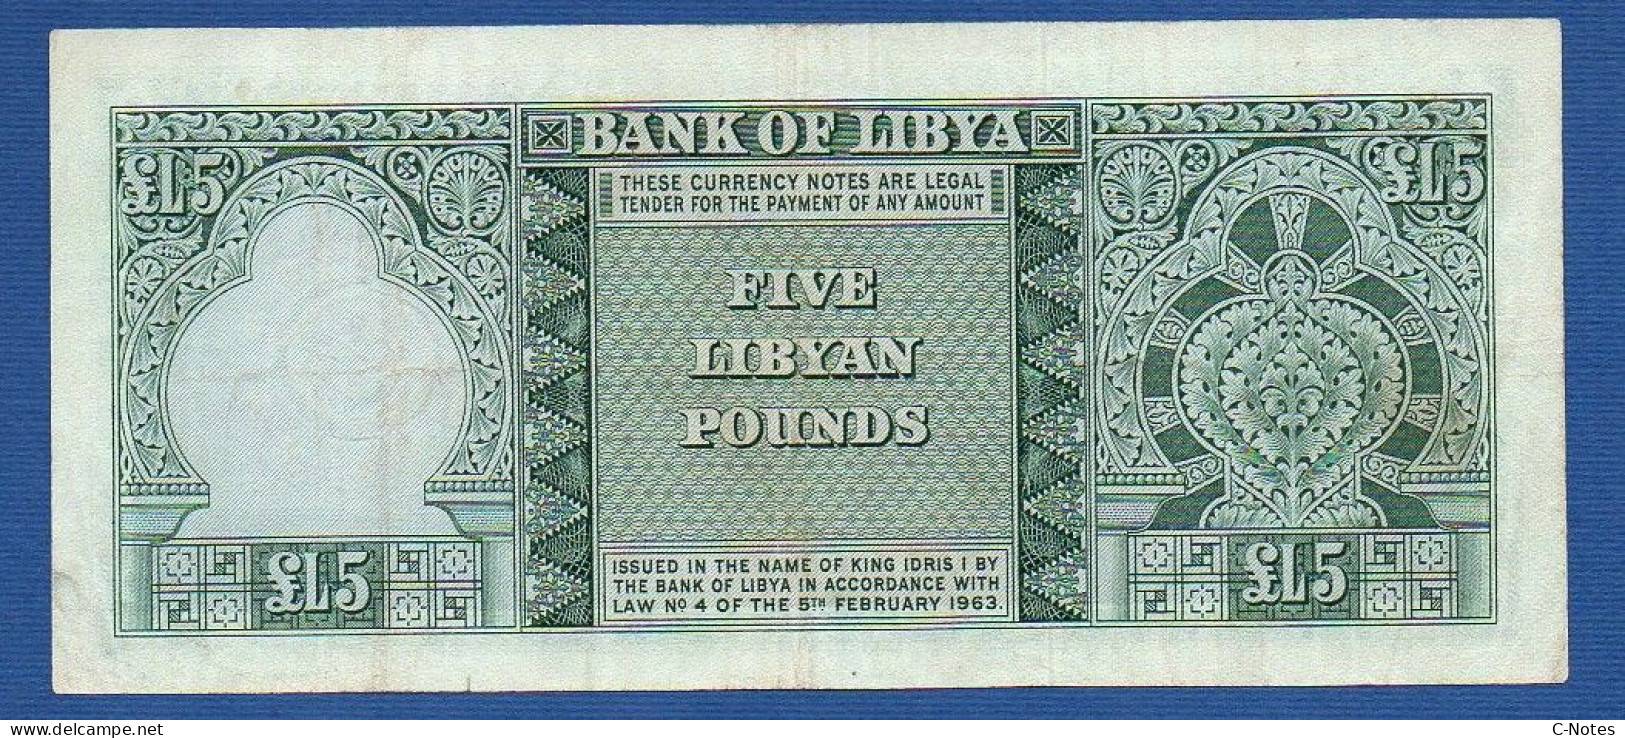 LIBYA - P.31 – 5 Pounds 1963 VF, Serie 5 B/15 571650 - Libye